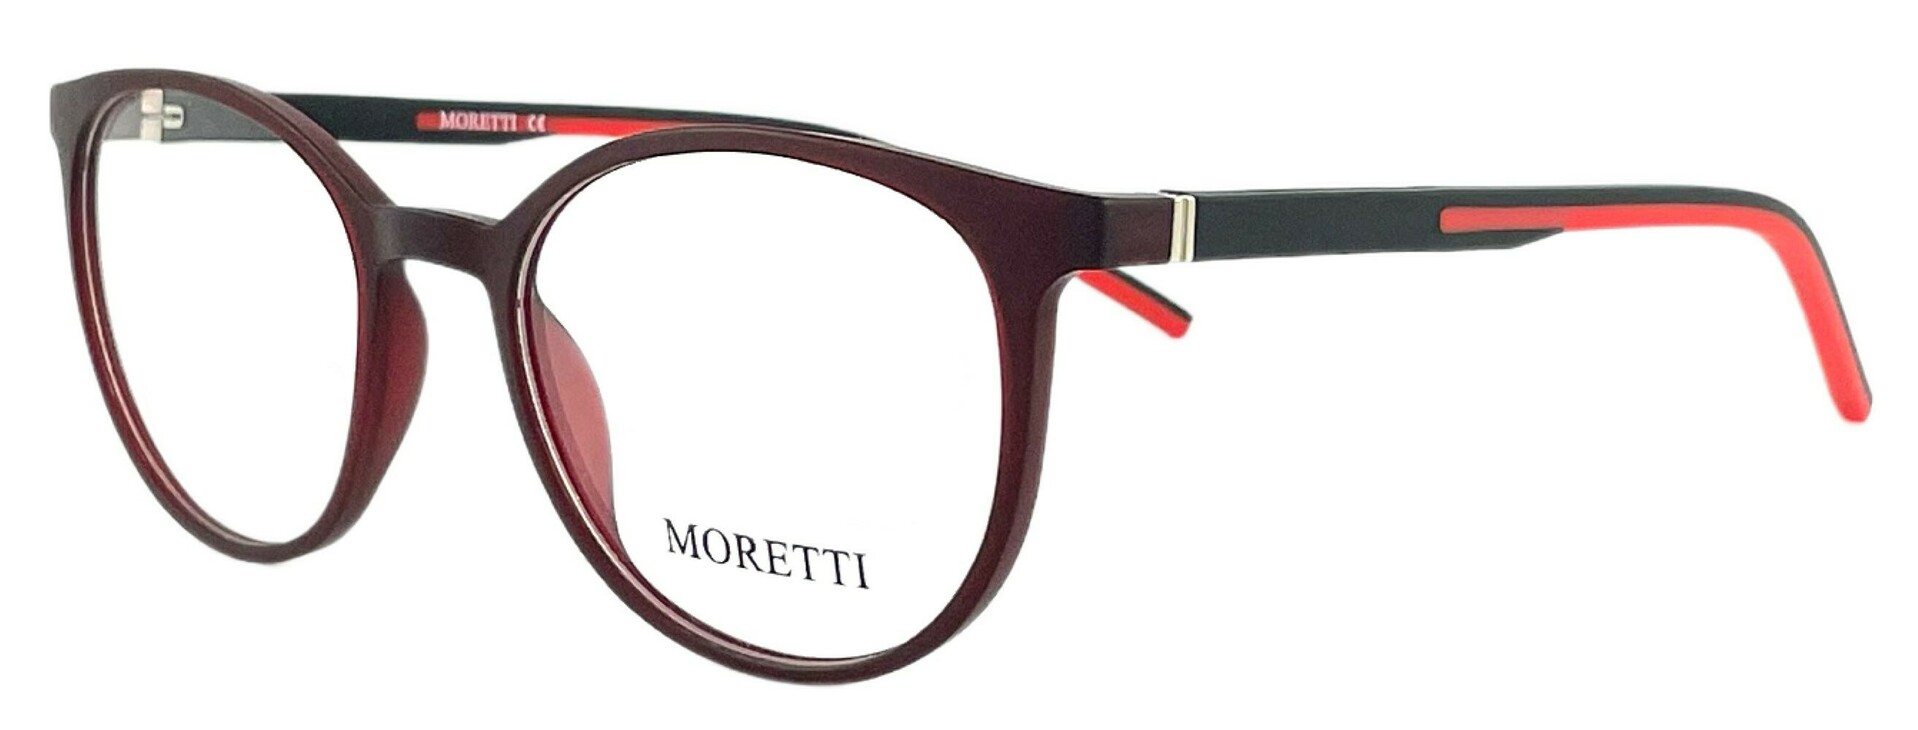 Moretti MZ10-17 C.05A 2